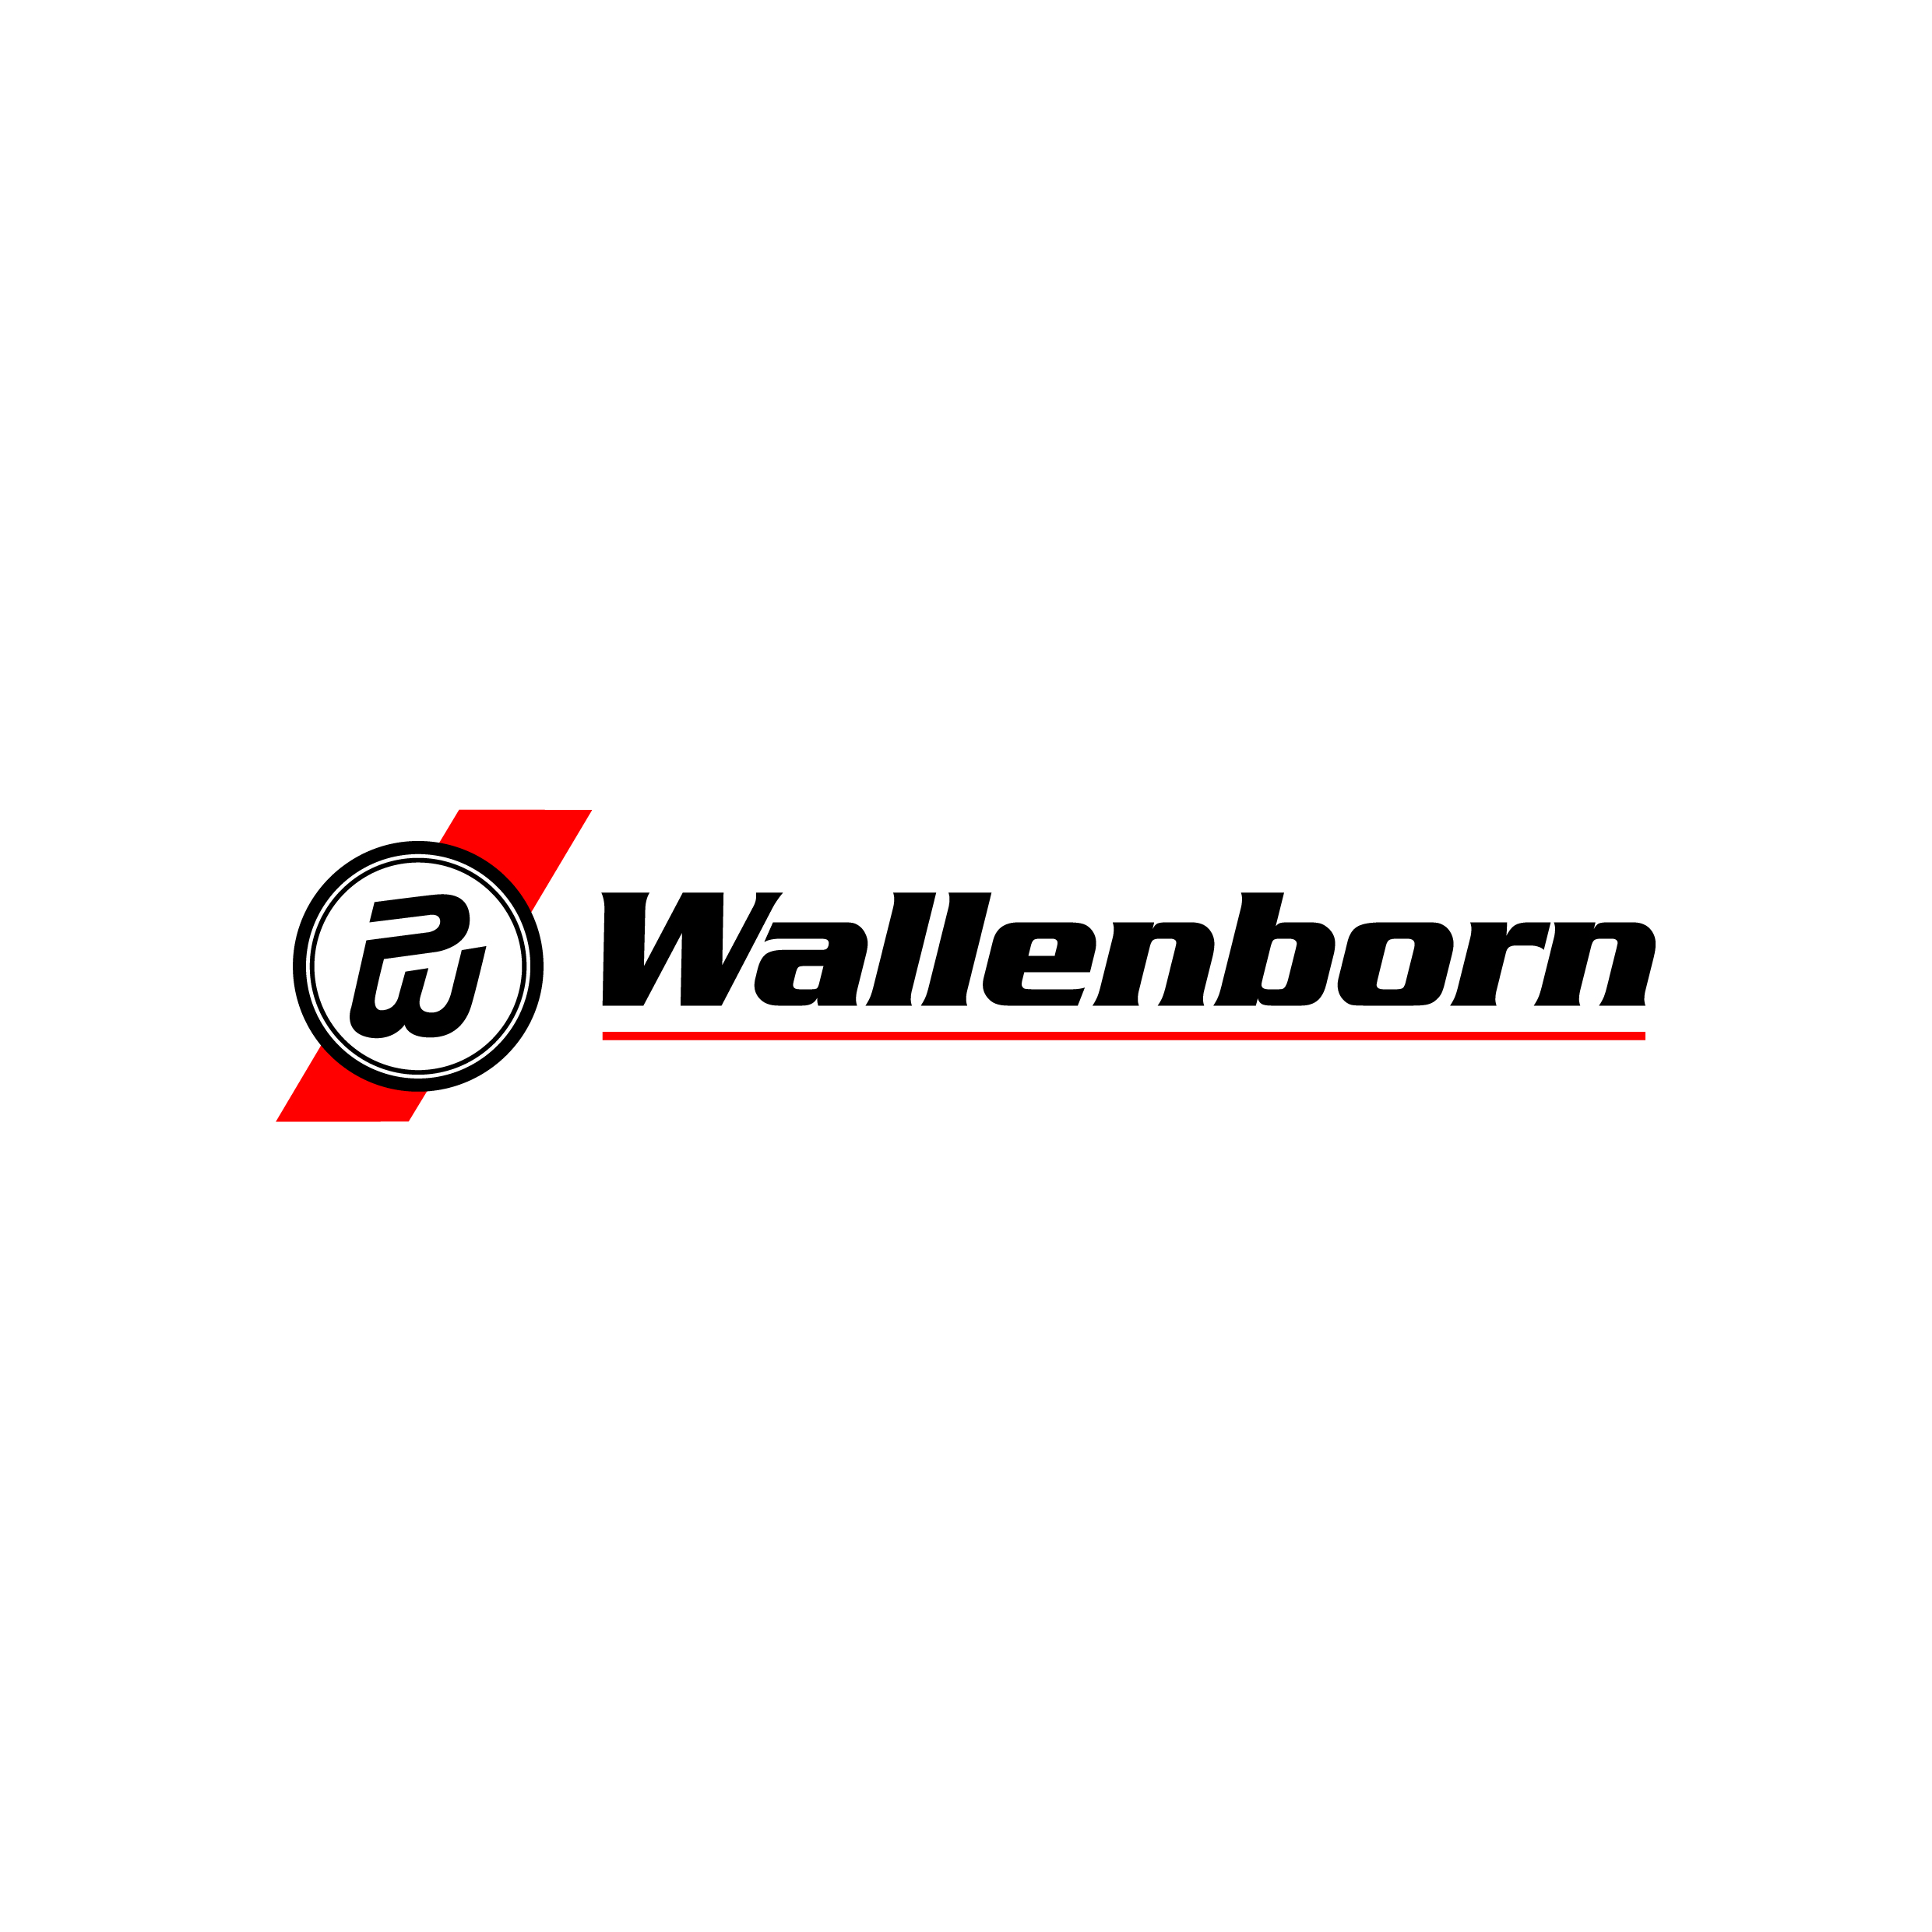 Wallenborn Transports SA